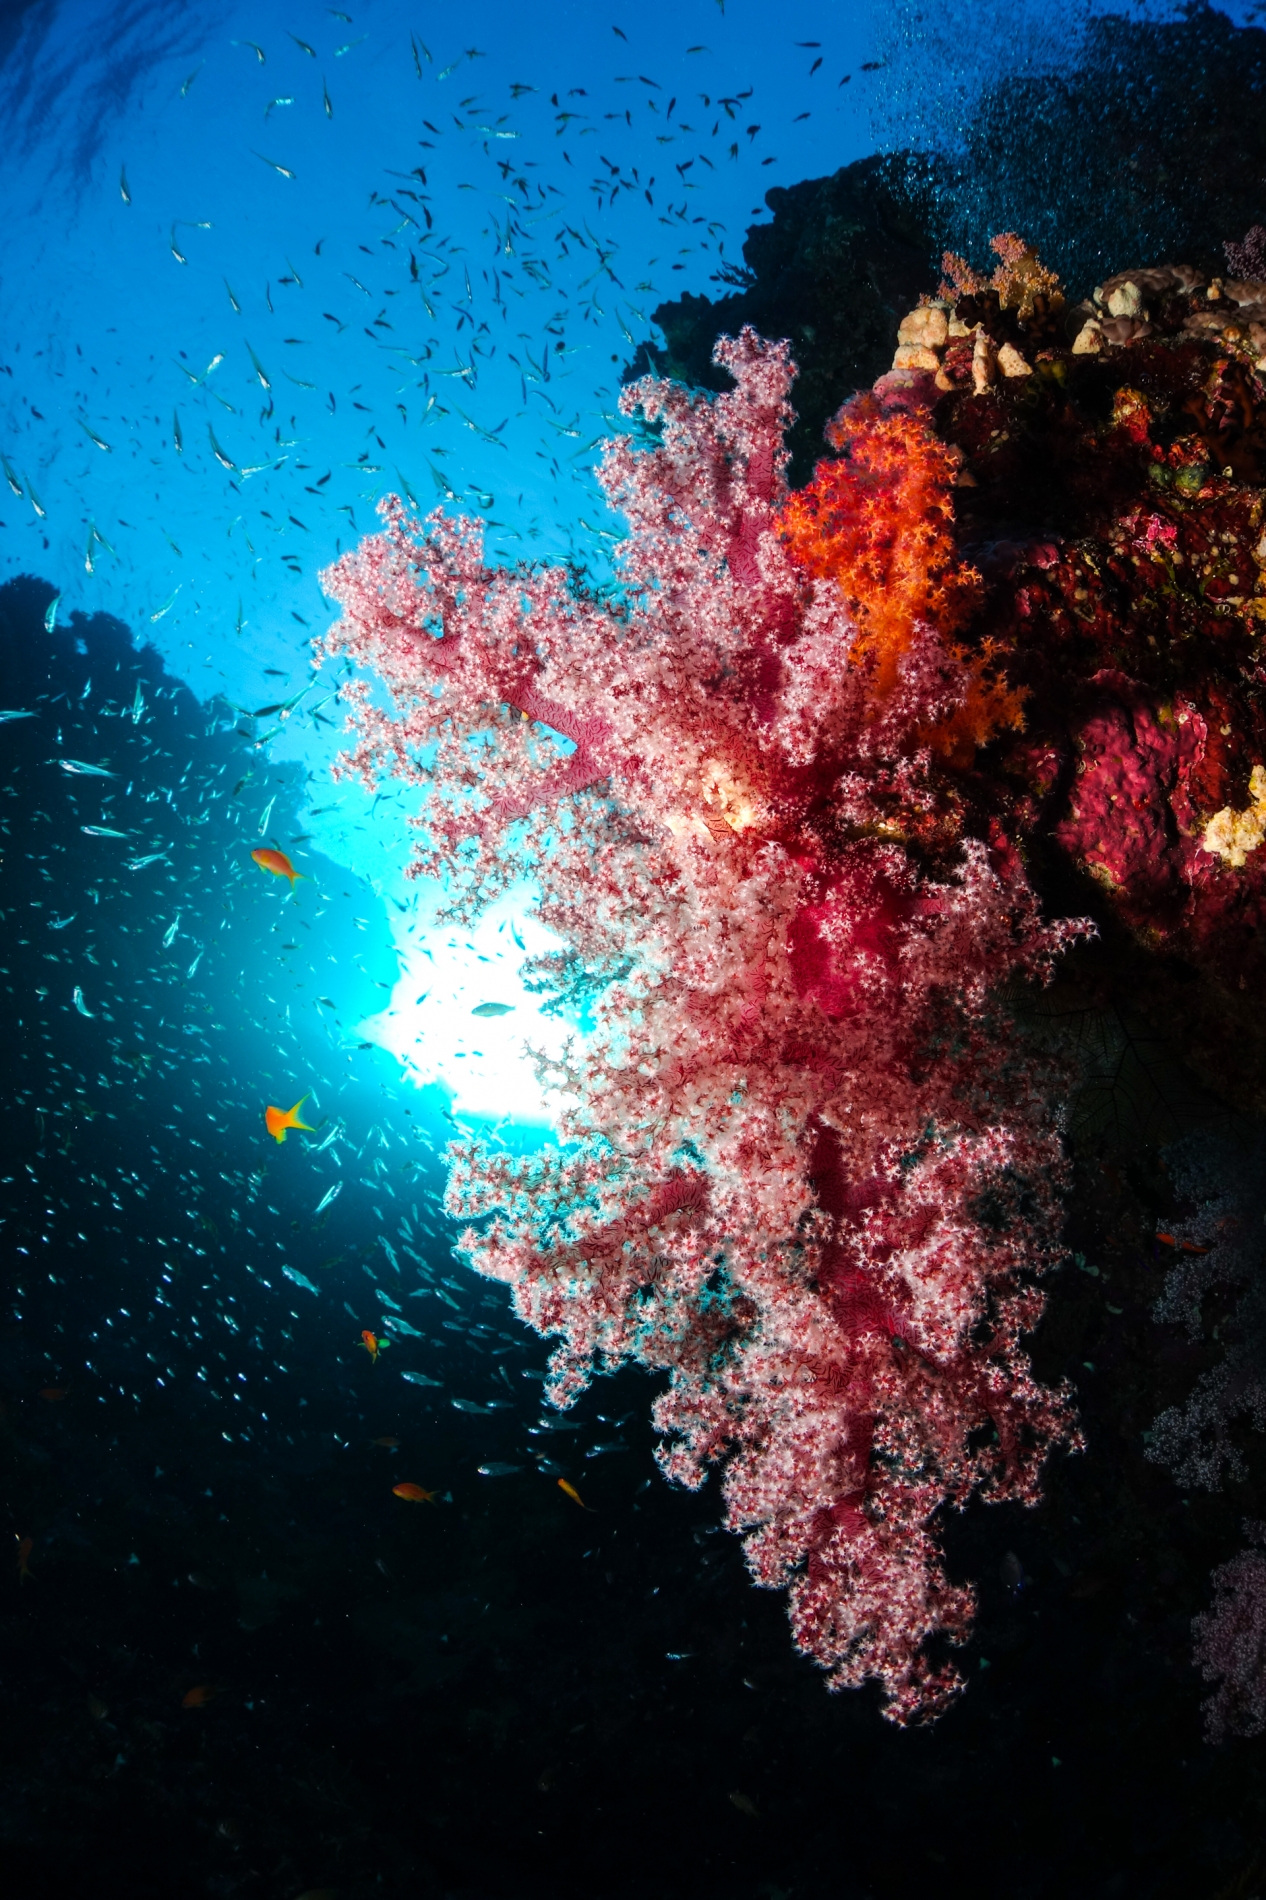 Die Schönheit der Korallen